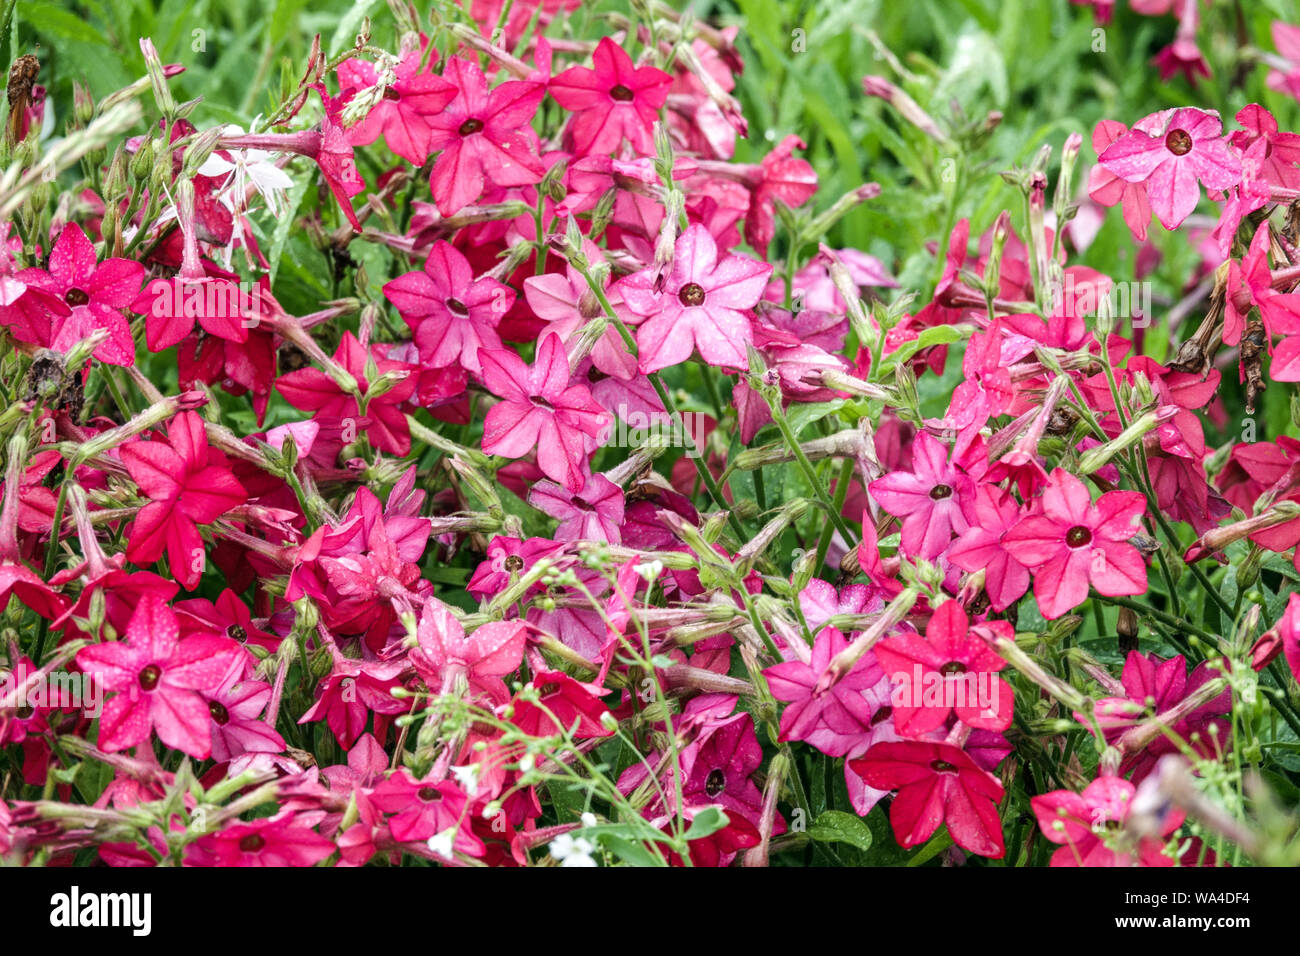 La floraison du tabac, Nicotiana alata 'domino' rouge Banque D'Images